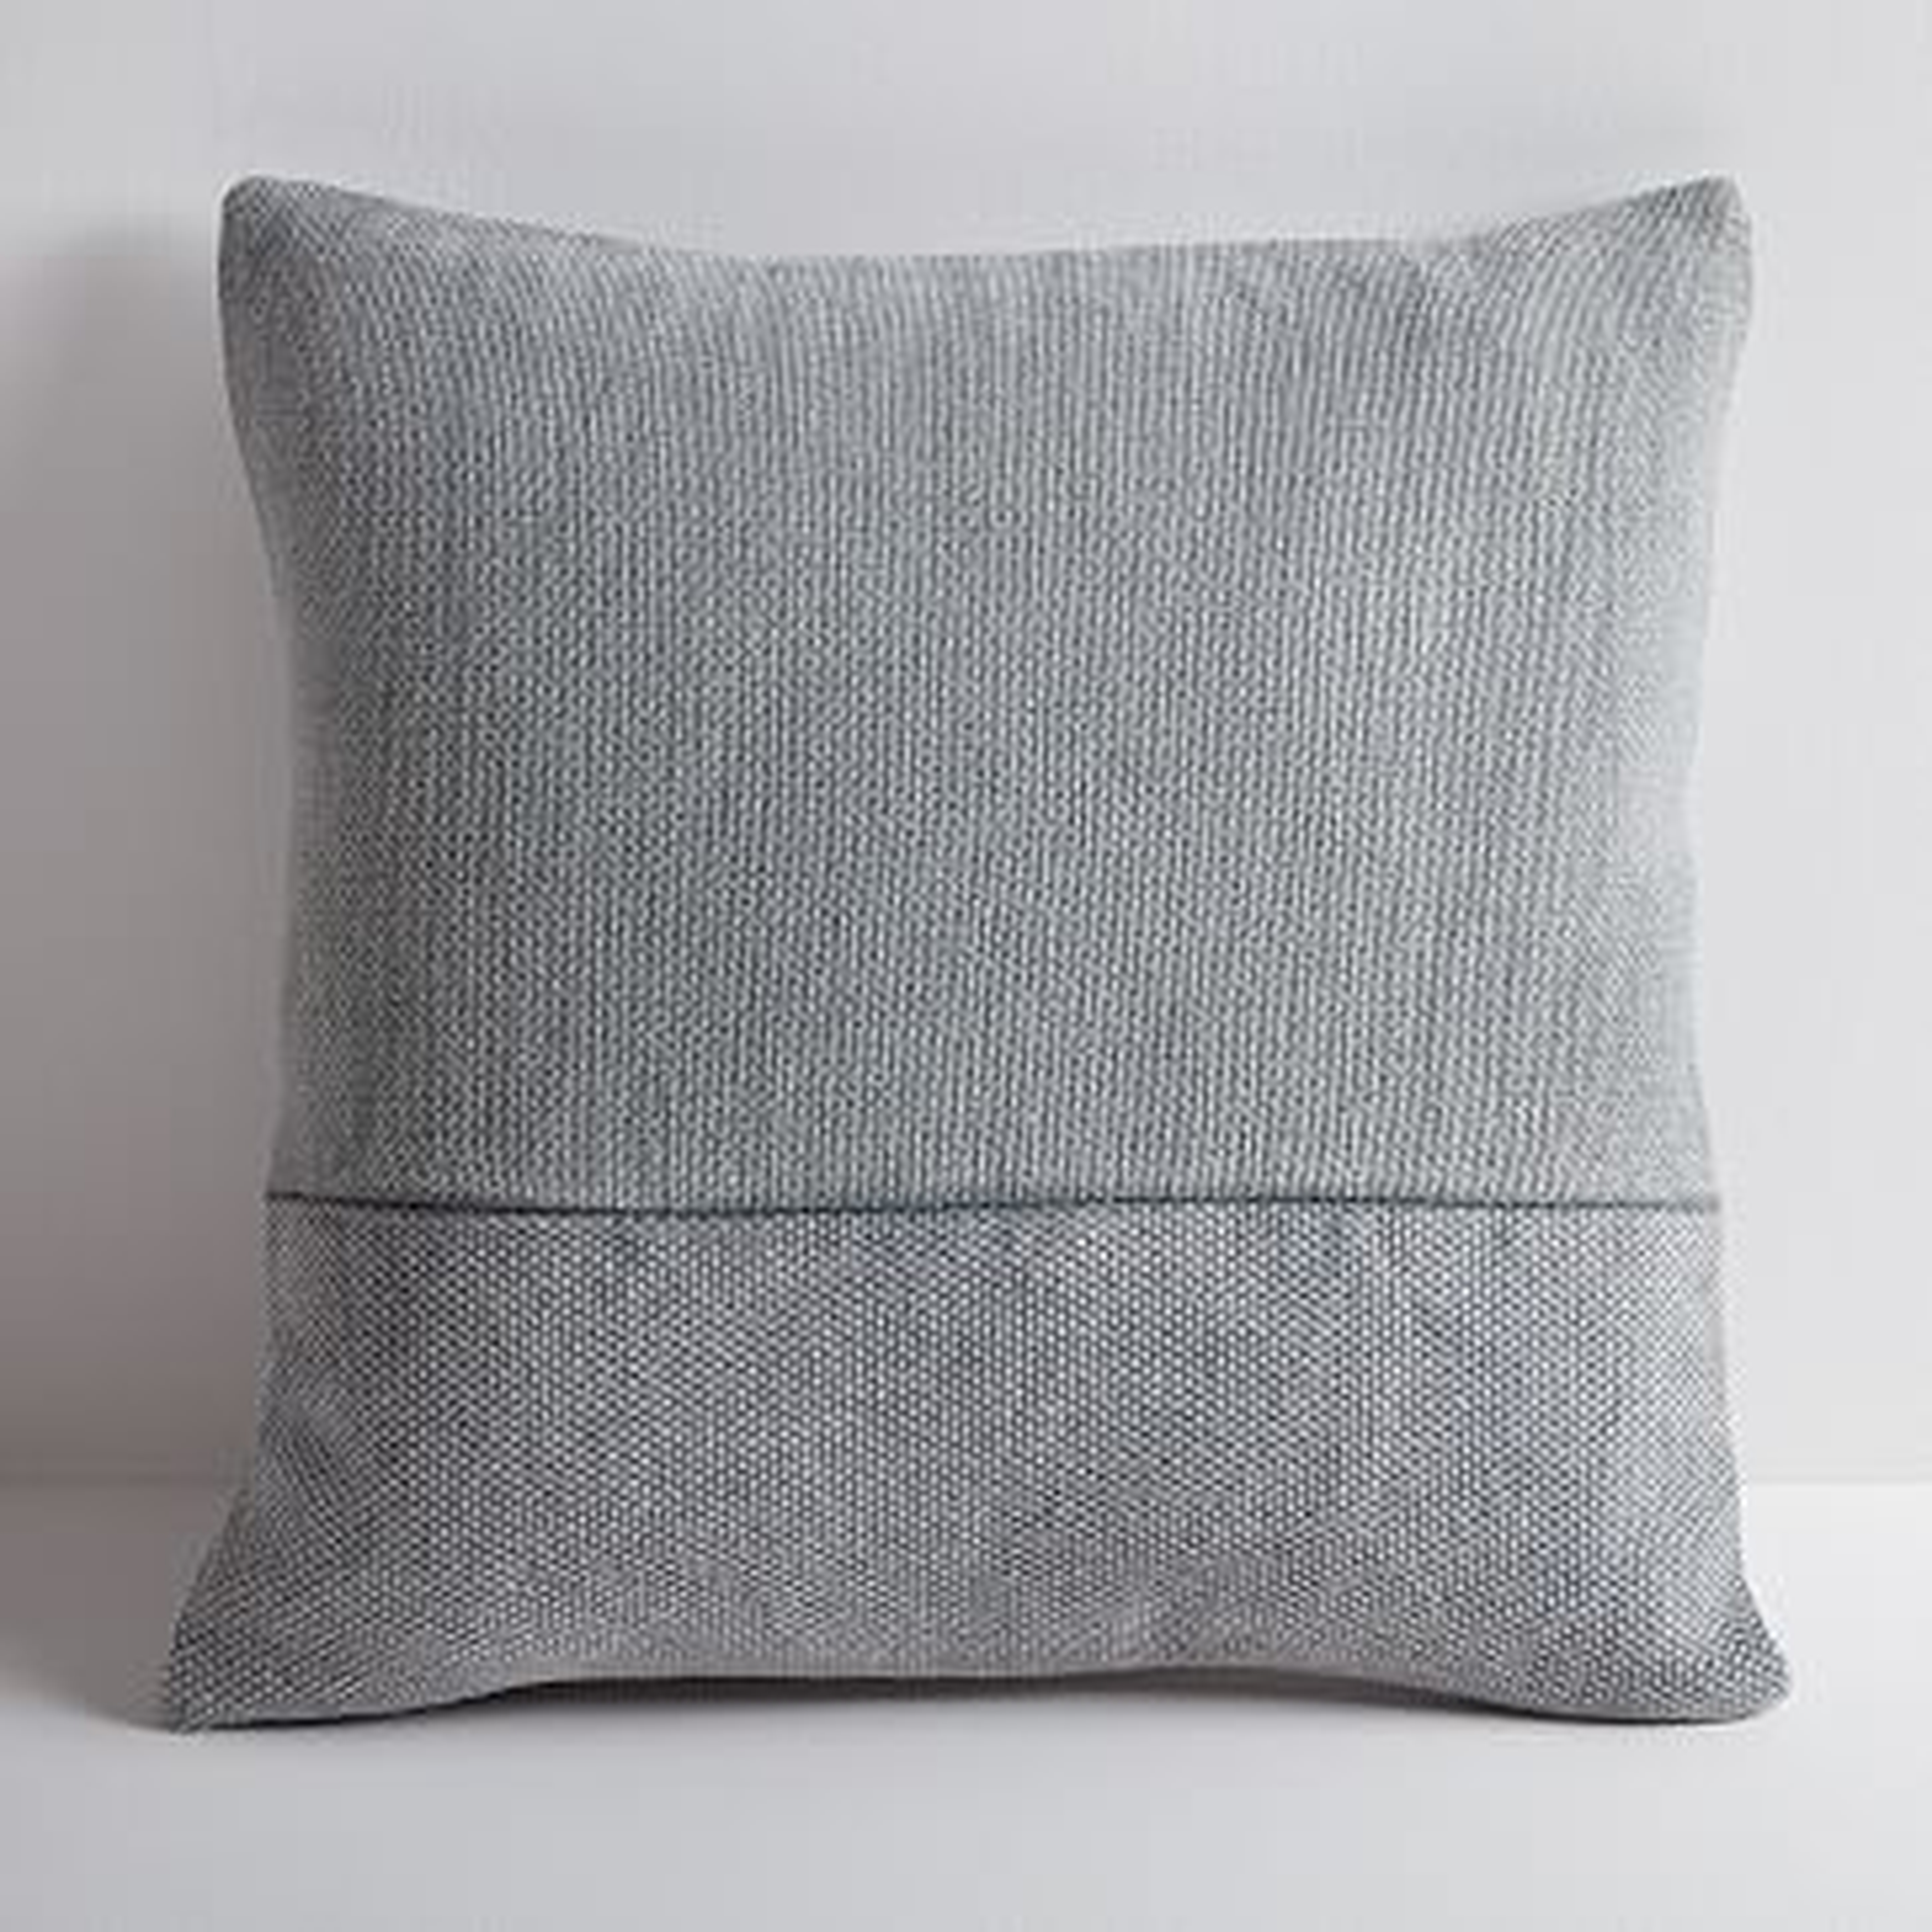 Cotton Canvas Pillow Cover, 18" sq, Iron - West Elm